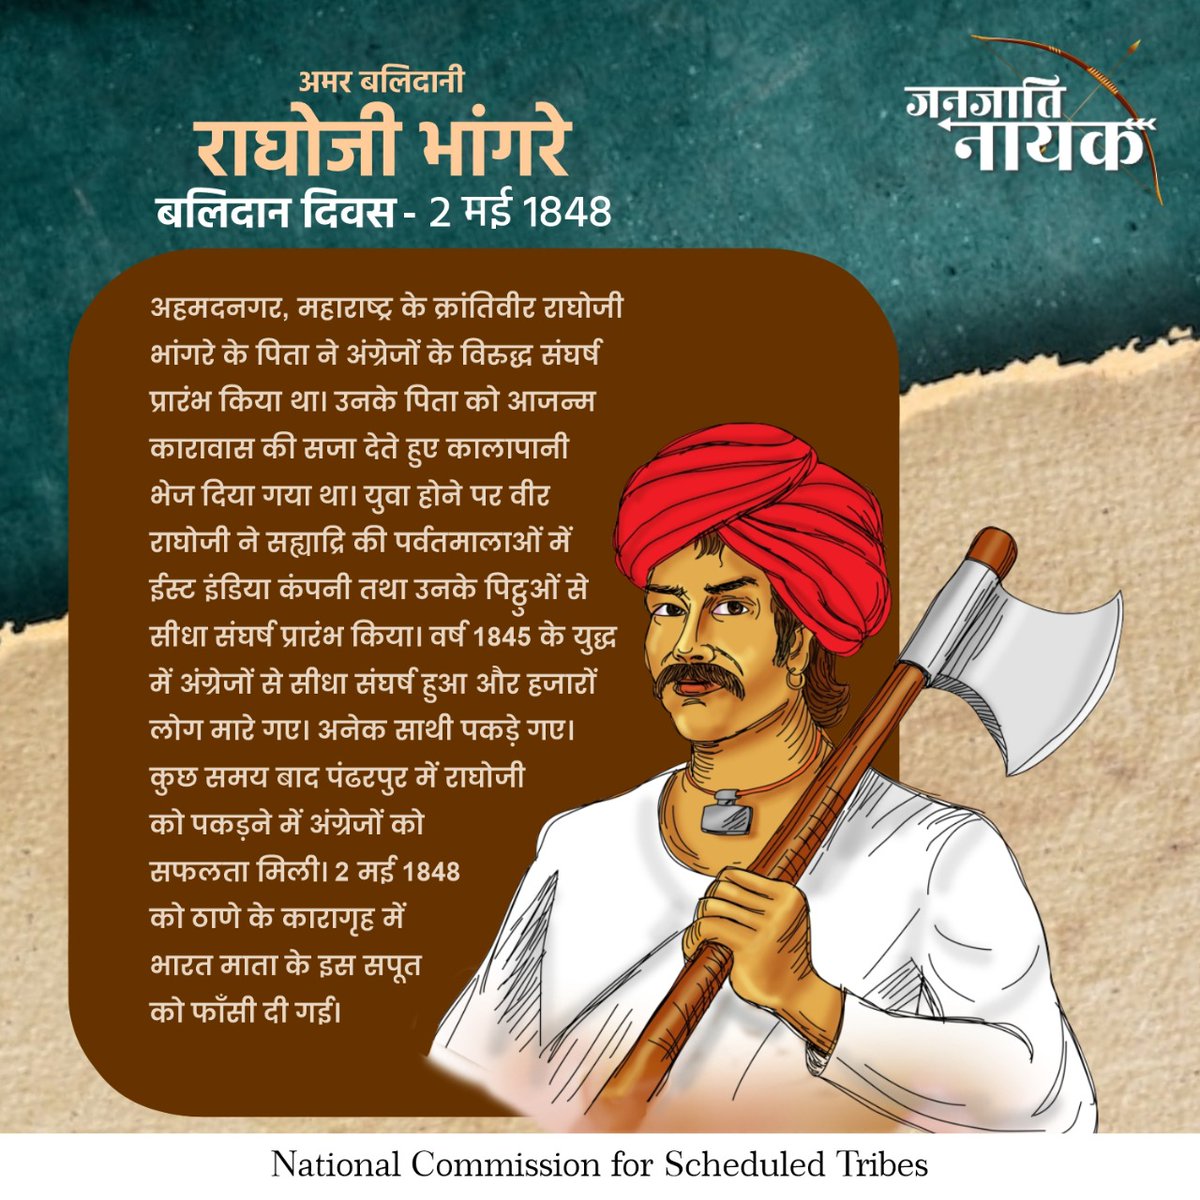 अमर बलिदानी वीर राघोजी भांगरे ने सह्यादि की पर्वतमालाओं में अंग्रेज़ों से संघर्ष किया। वर्ष 1845 के युद्ध में हजारों लोग मारे गए। वहीं वर्ष 1848 में अंग्रेज़ों ने उन्हें फांसी दे दी। #NCST #Scheduletribes #RaghojiBhangare #tribalheroes